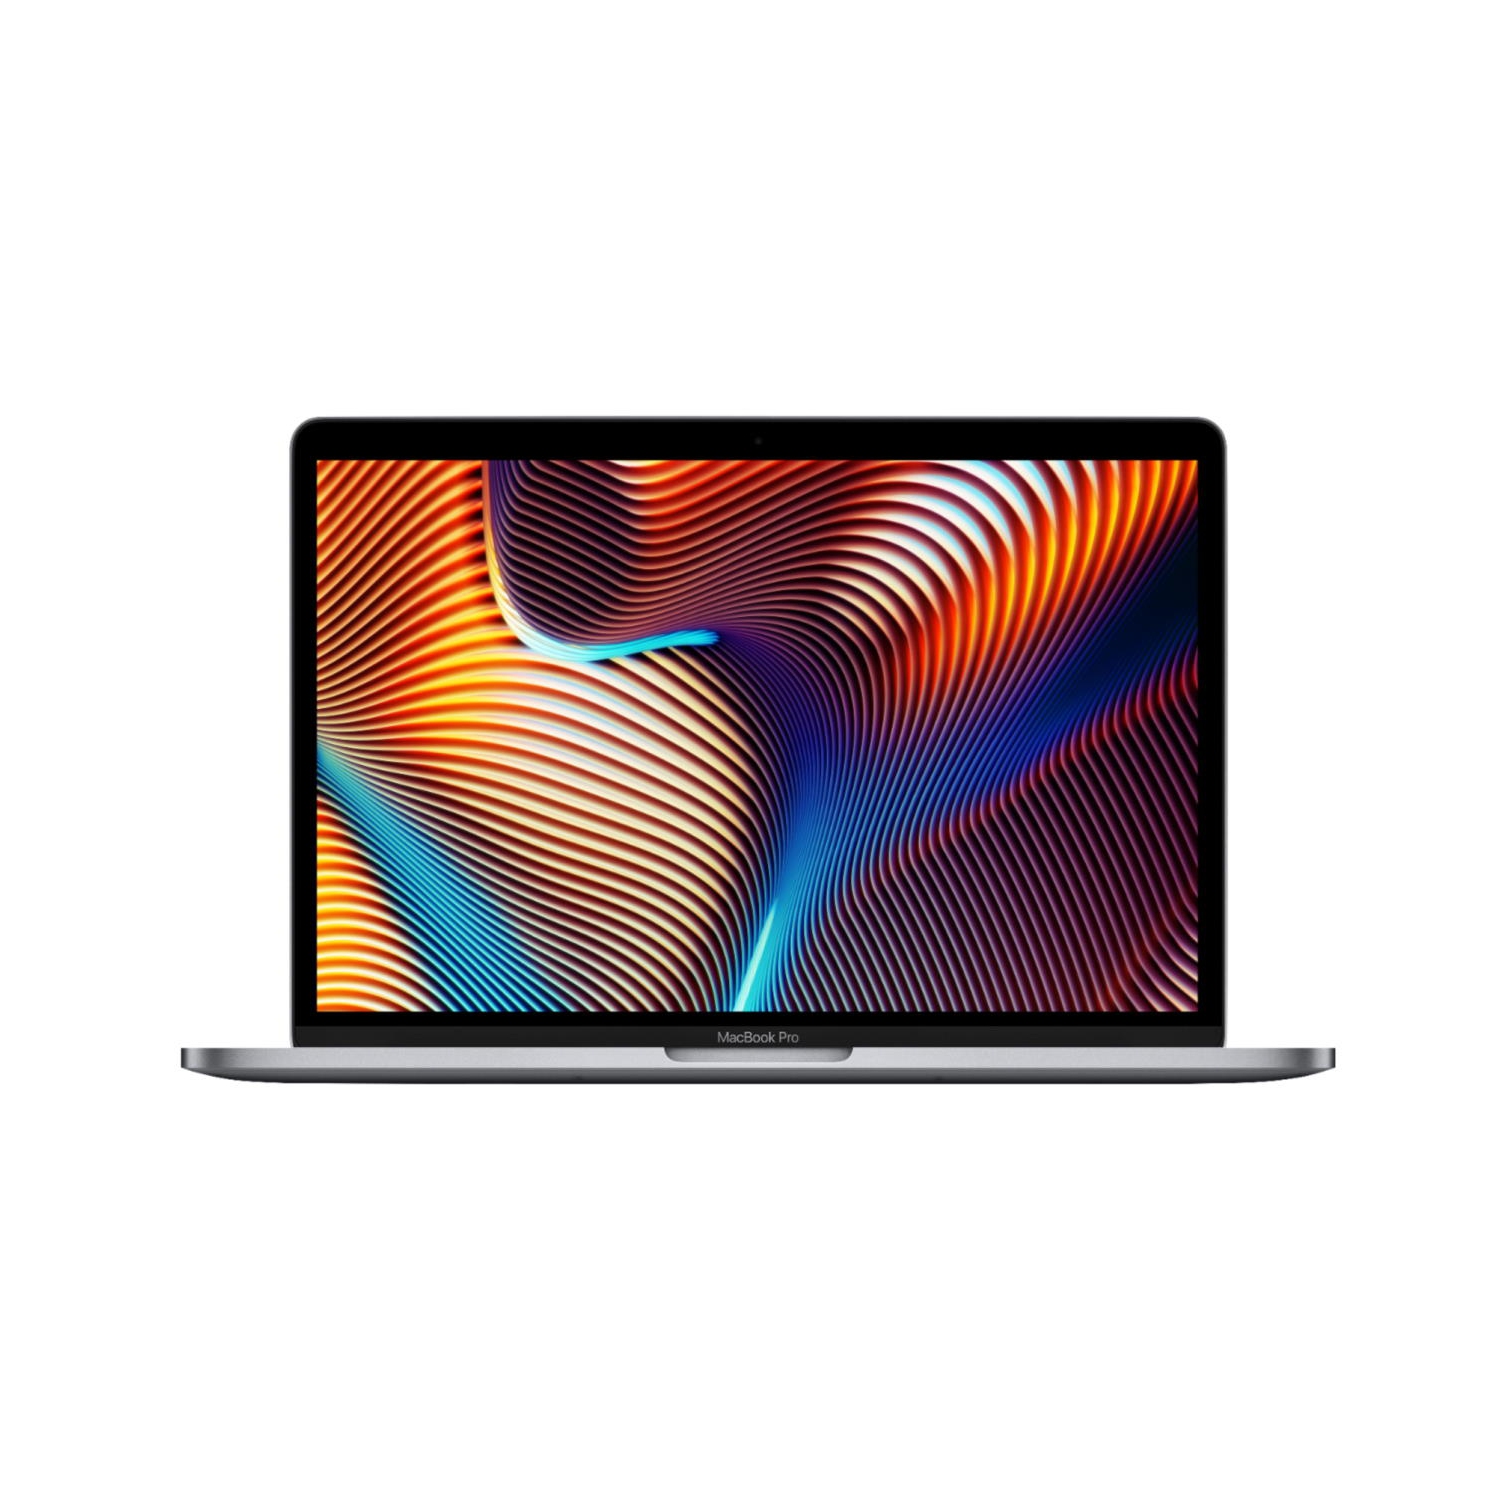 (Refurbished - Excellent) Macbook Pro 13.3-inch (Space Gray, 1yr Warranty) 2.4Ghz Quad Core i5 (2019) MV962LL/A 256GB Flash 8GB RAM 2560x1600 Mac OS